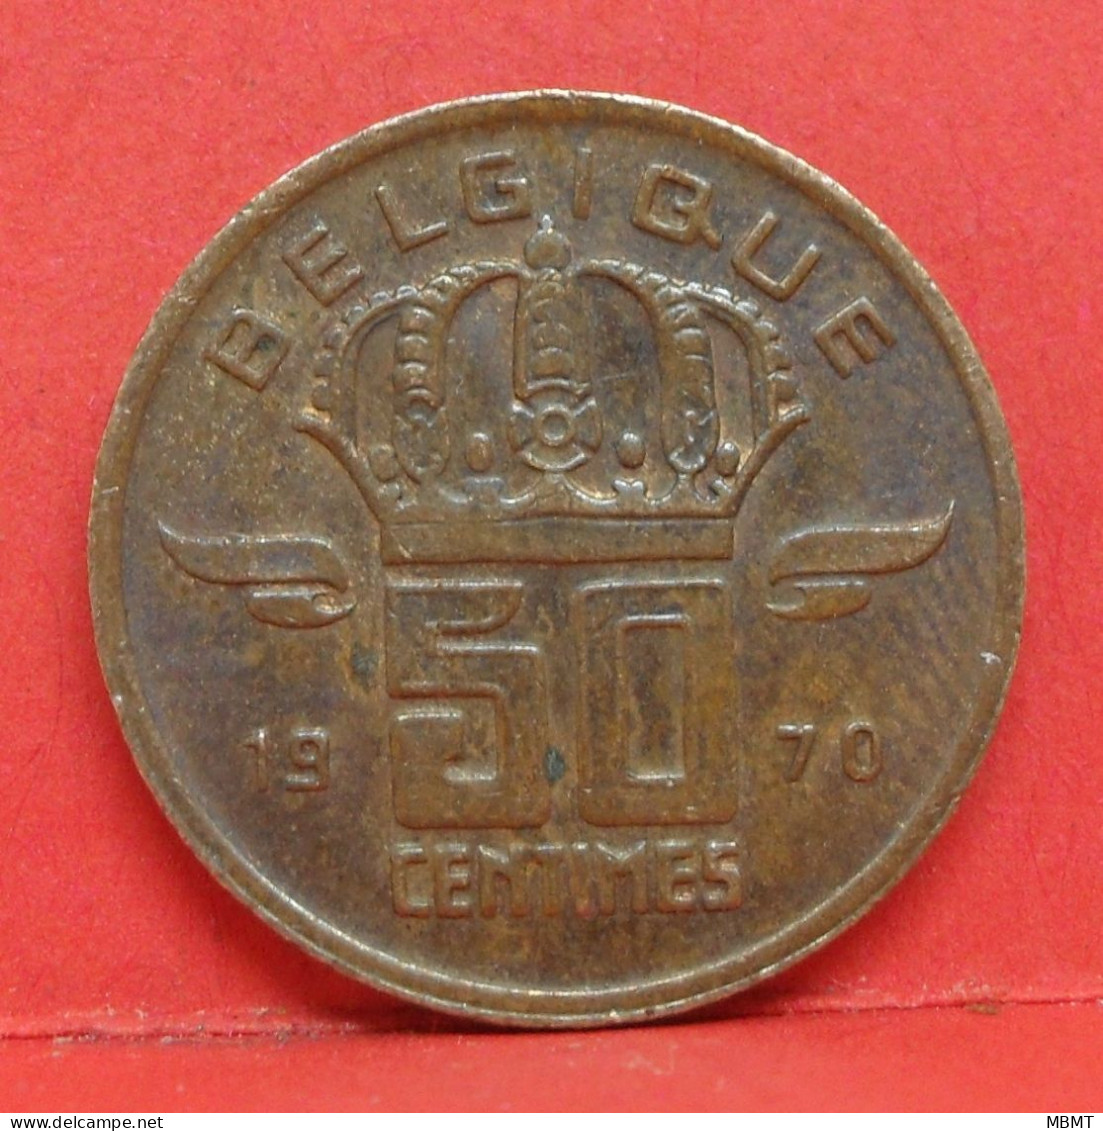 50 Centimes 1970 - TTB - Pièce Monnaie Belgique - Article N°1716 - 50 Cent